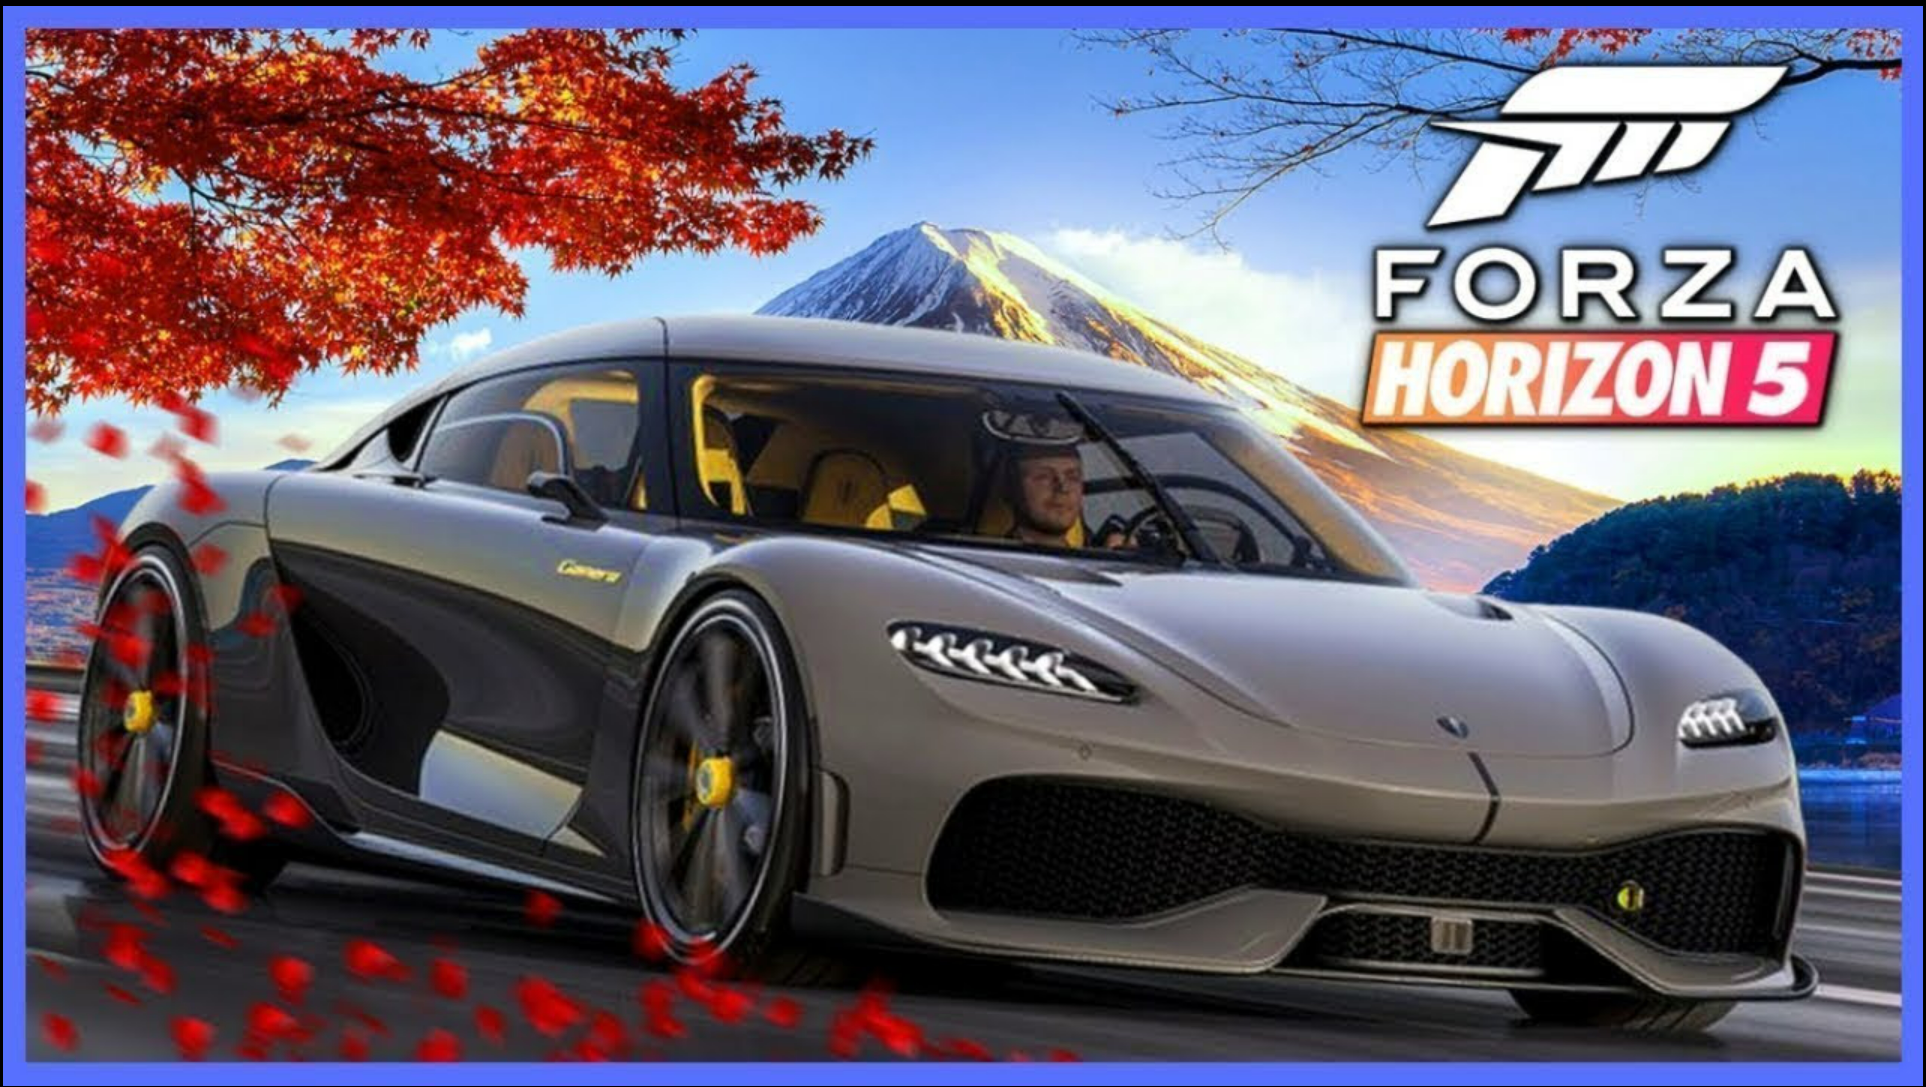 Форза хорайзен 5. Forza Horizon 5 Premium Edition. Forza Horizon 5 Xbox one. Форза хорайзон 5 гонки. Forza horizon 2021